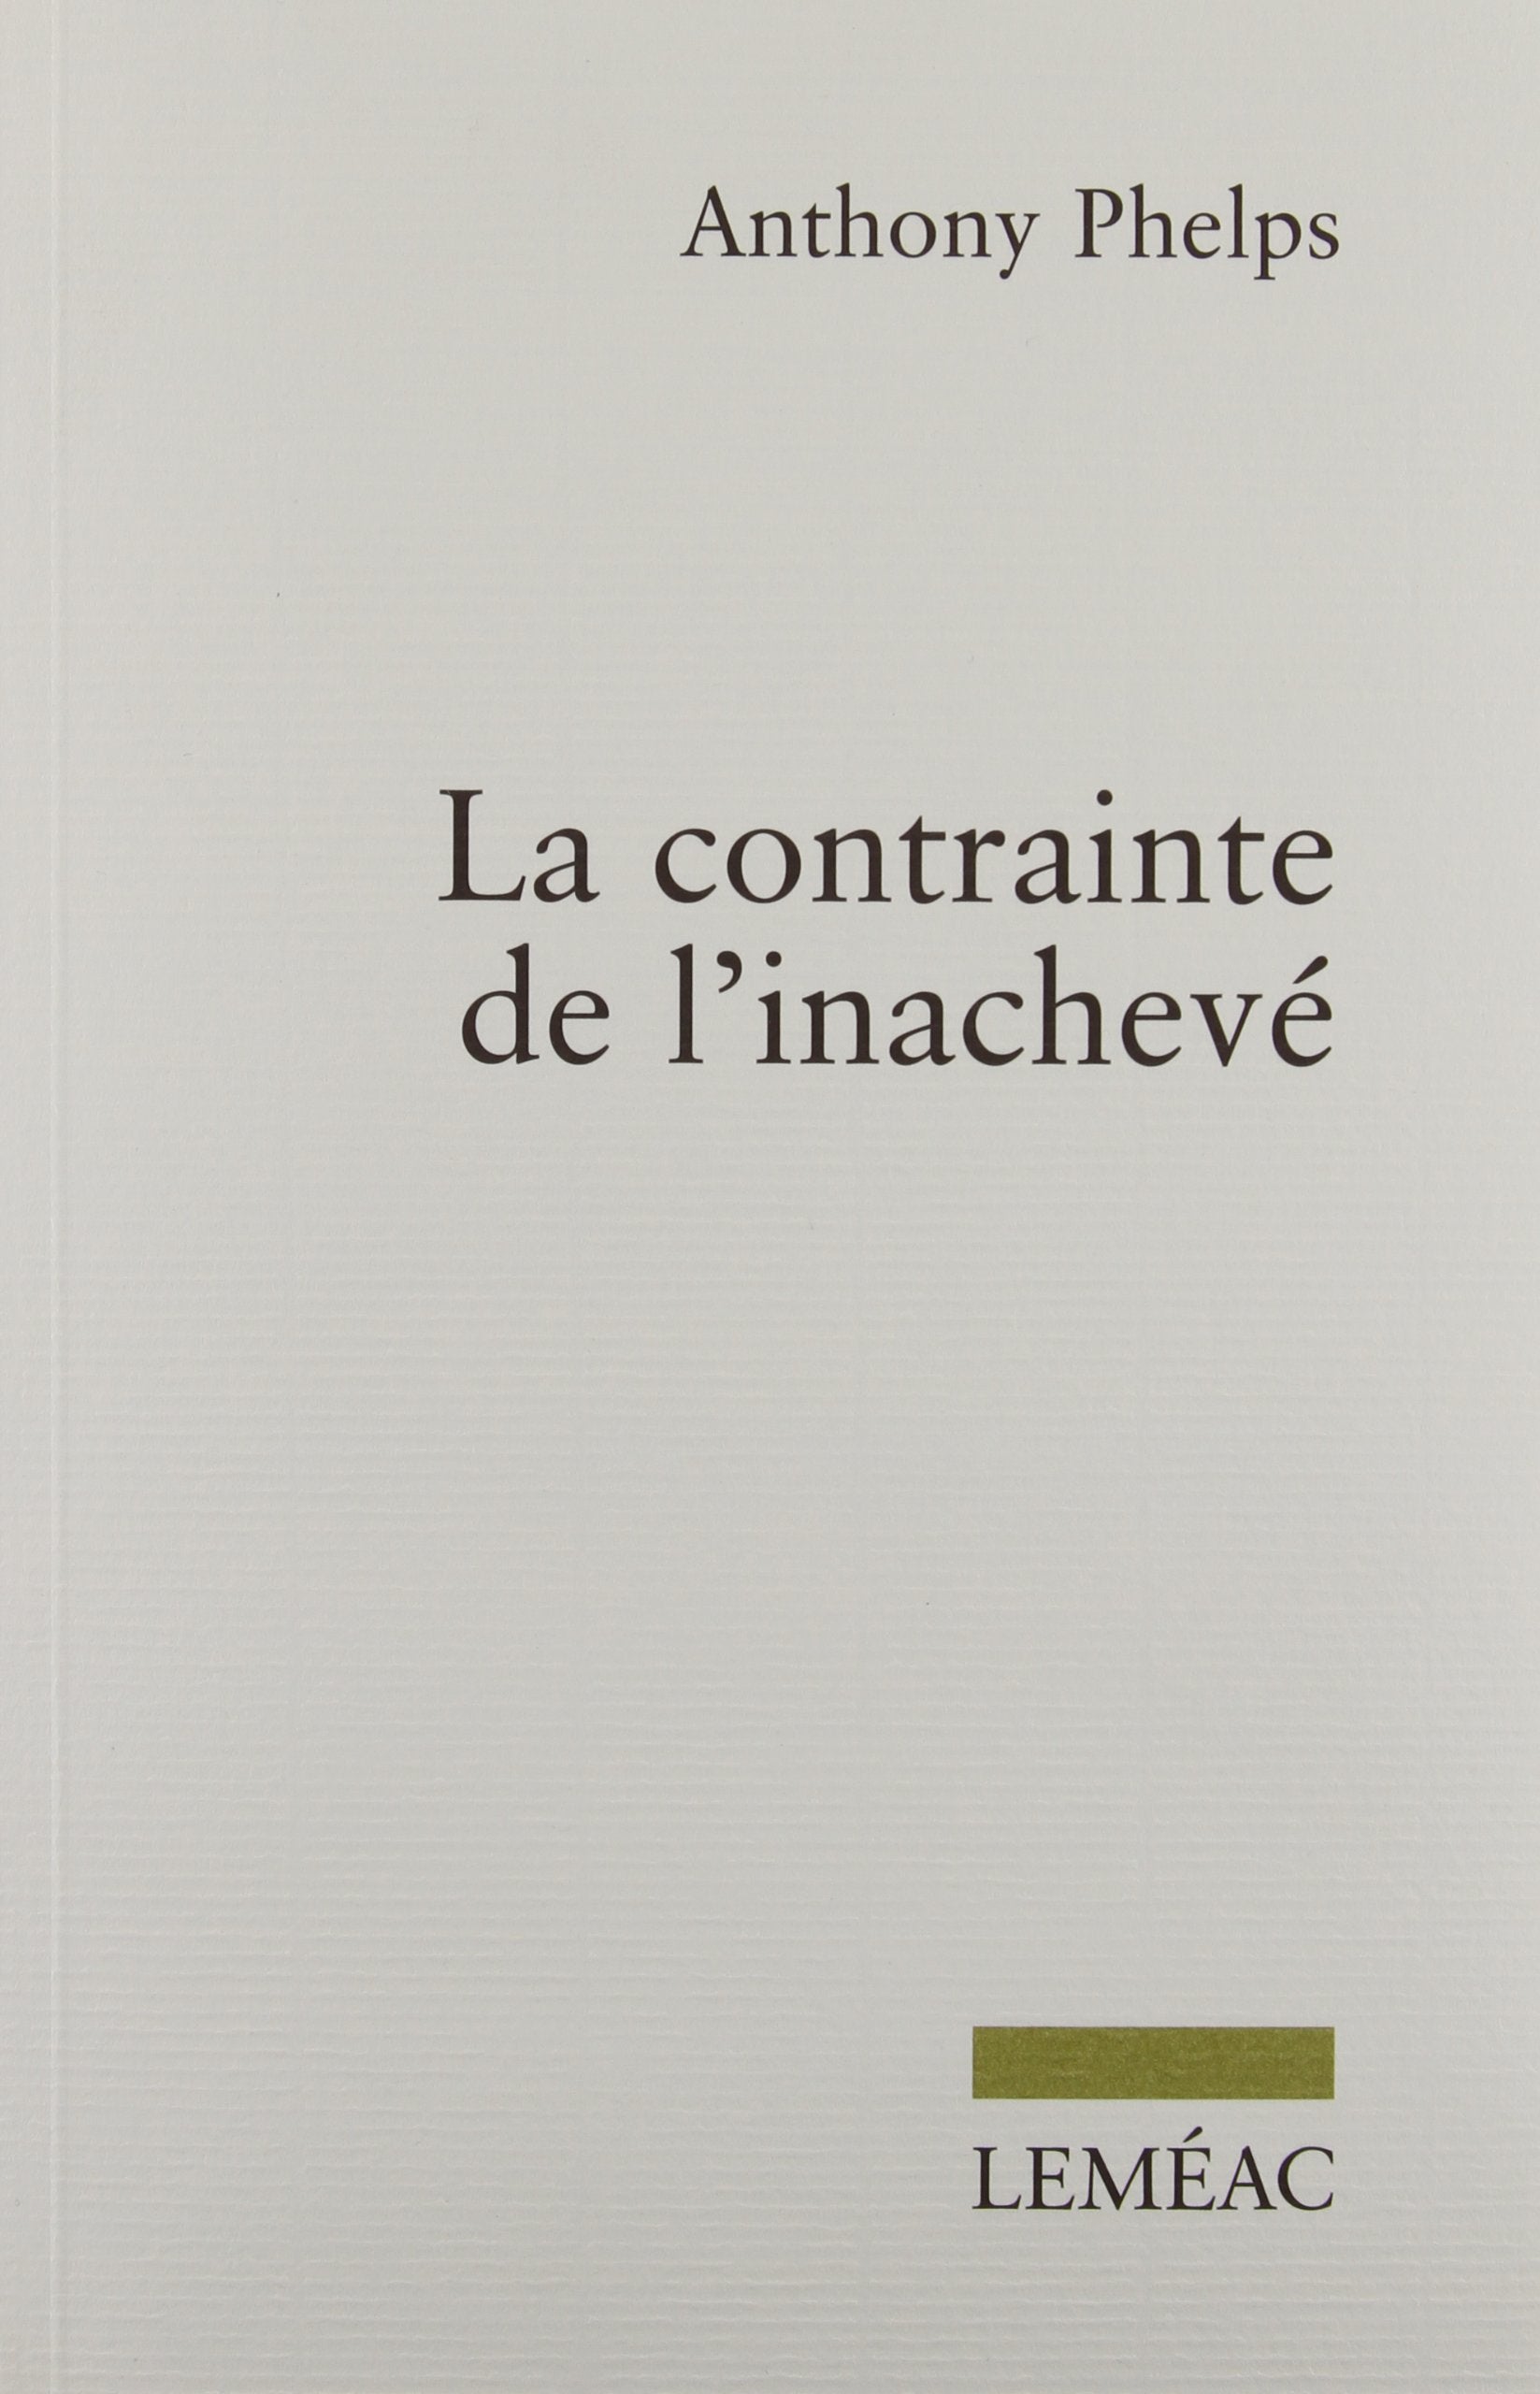 Livre ISBN 2760932796 La contrainte de l'inachevé (Anthony Phelps)